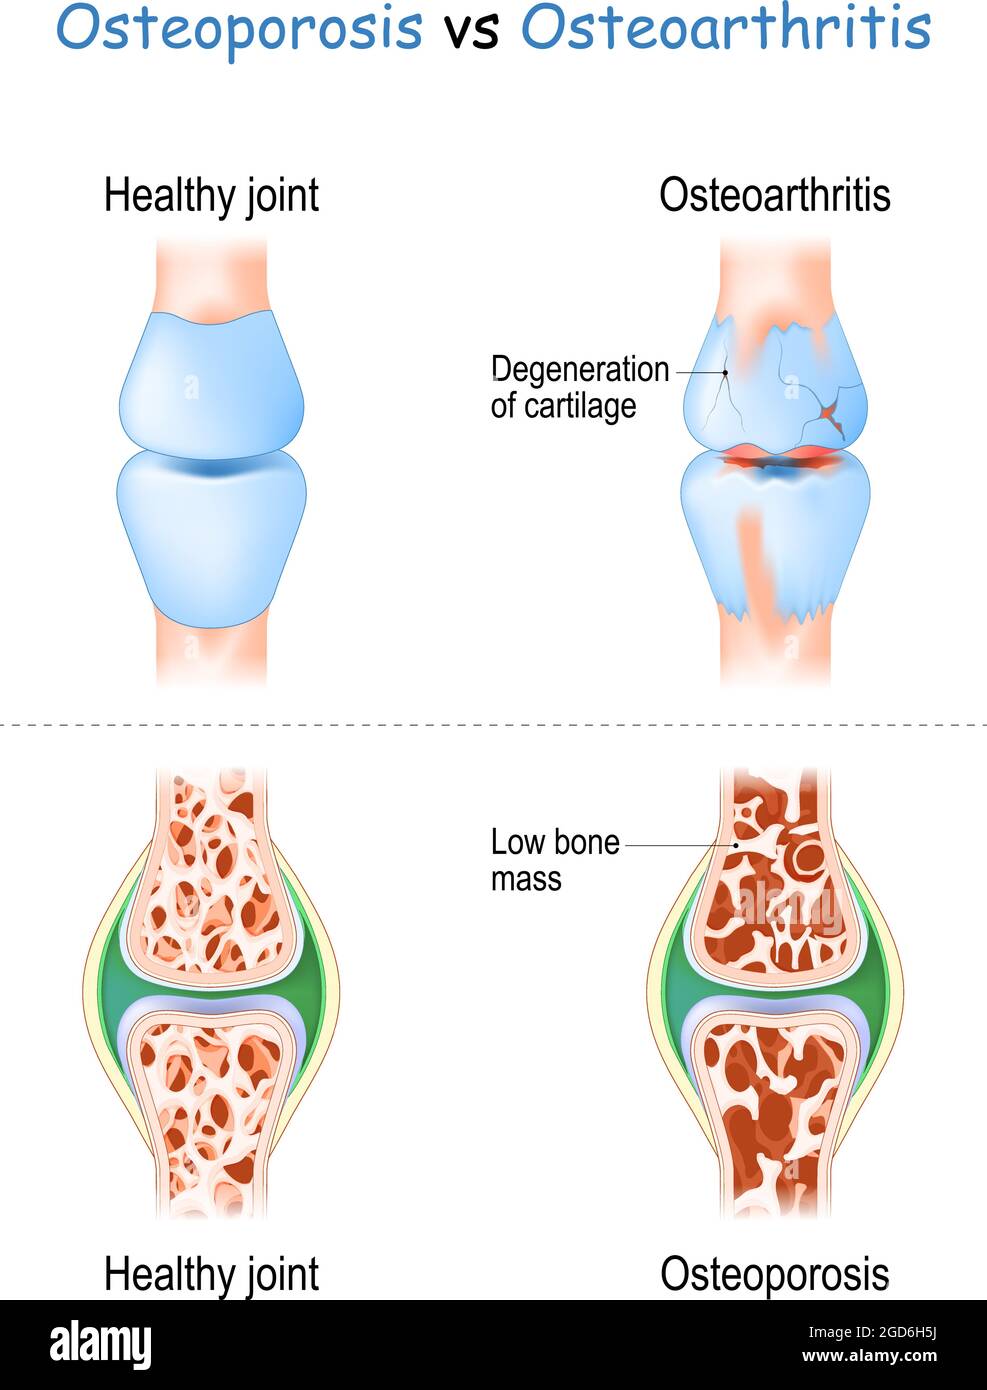 Osteoporosi vs osteoartrite confronto e differenza tra le malattie articolari sane e degenerative della cartilagine, e le articolazioni con bassa massa ossea Illustrazione Vettoriale